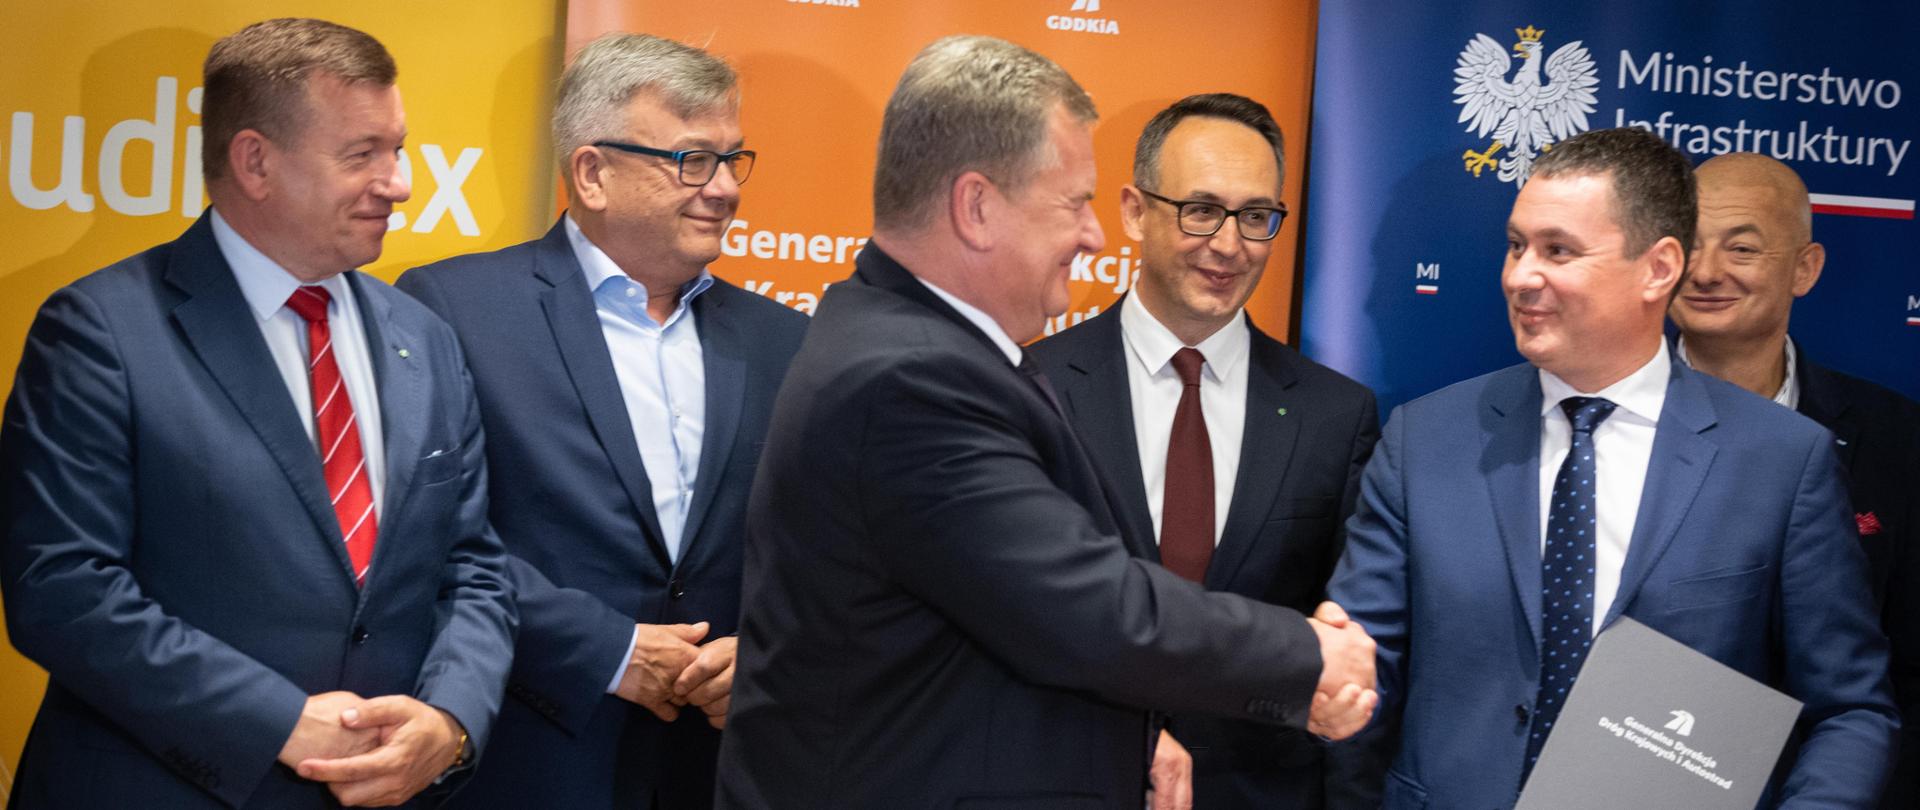 Generalna Dyrekcja Dróg Krajowych i Autostrad podpisała umowy na zaprojektowanie i budowę pierwszych odcinków drogi ekspresowej S10 między Szczecinem a Piłą